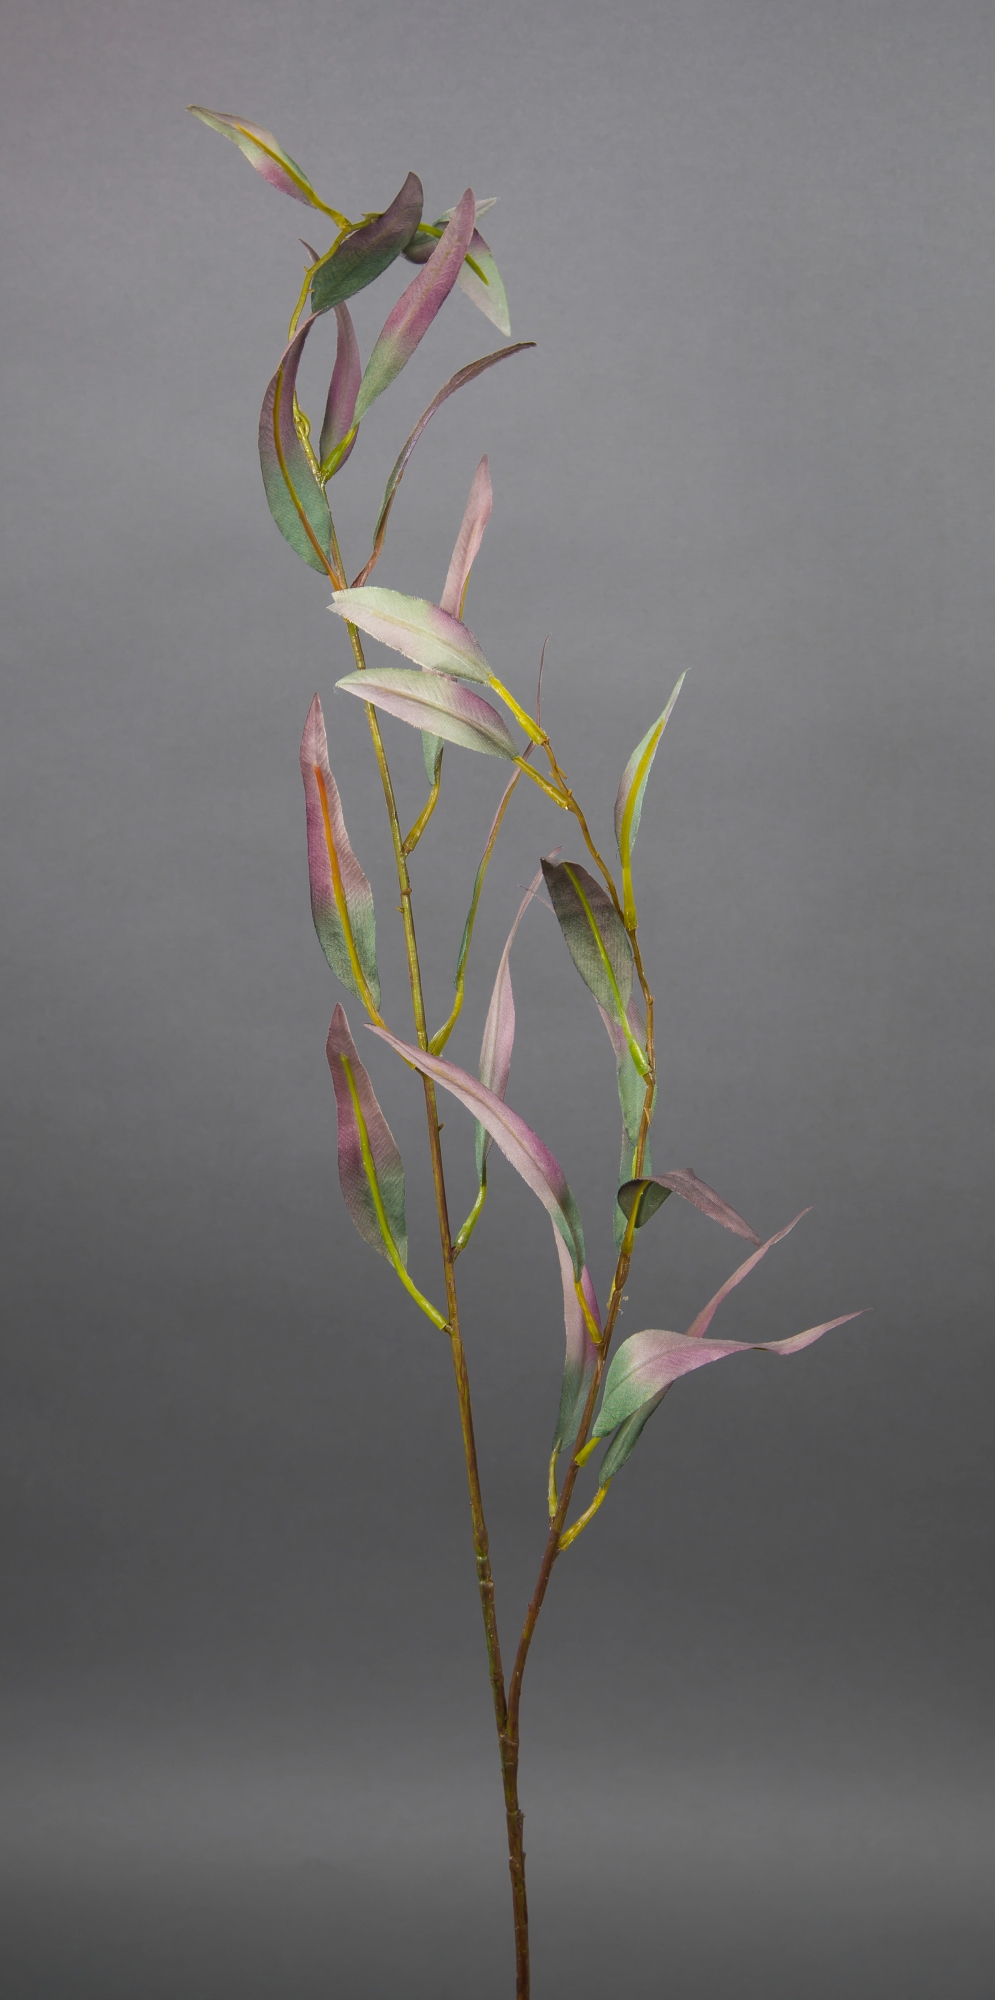 Eukalyptuszweig 90cm grün-rosa DP Kunstzweig Zweige Eukalyptus Kunstpflanzen künstliche künstlicher